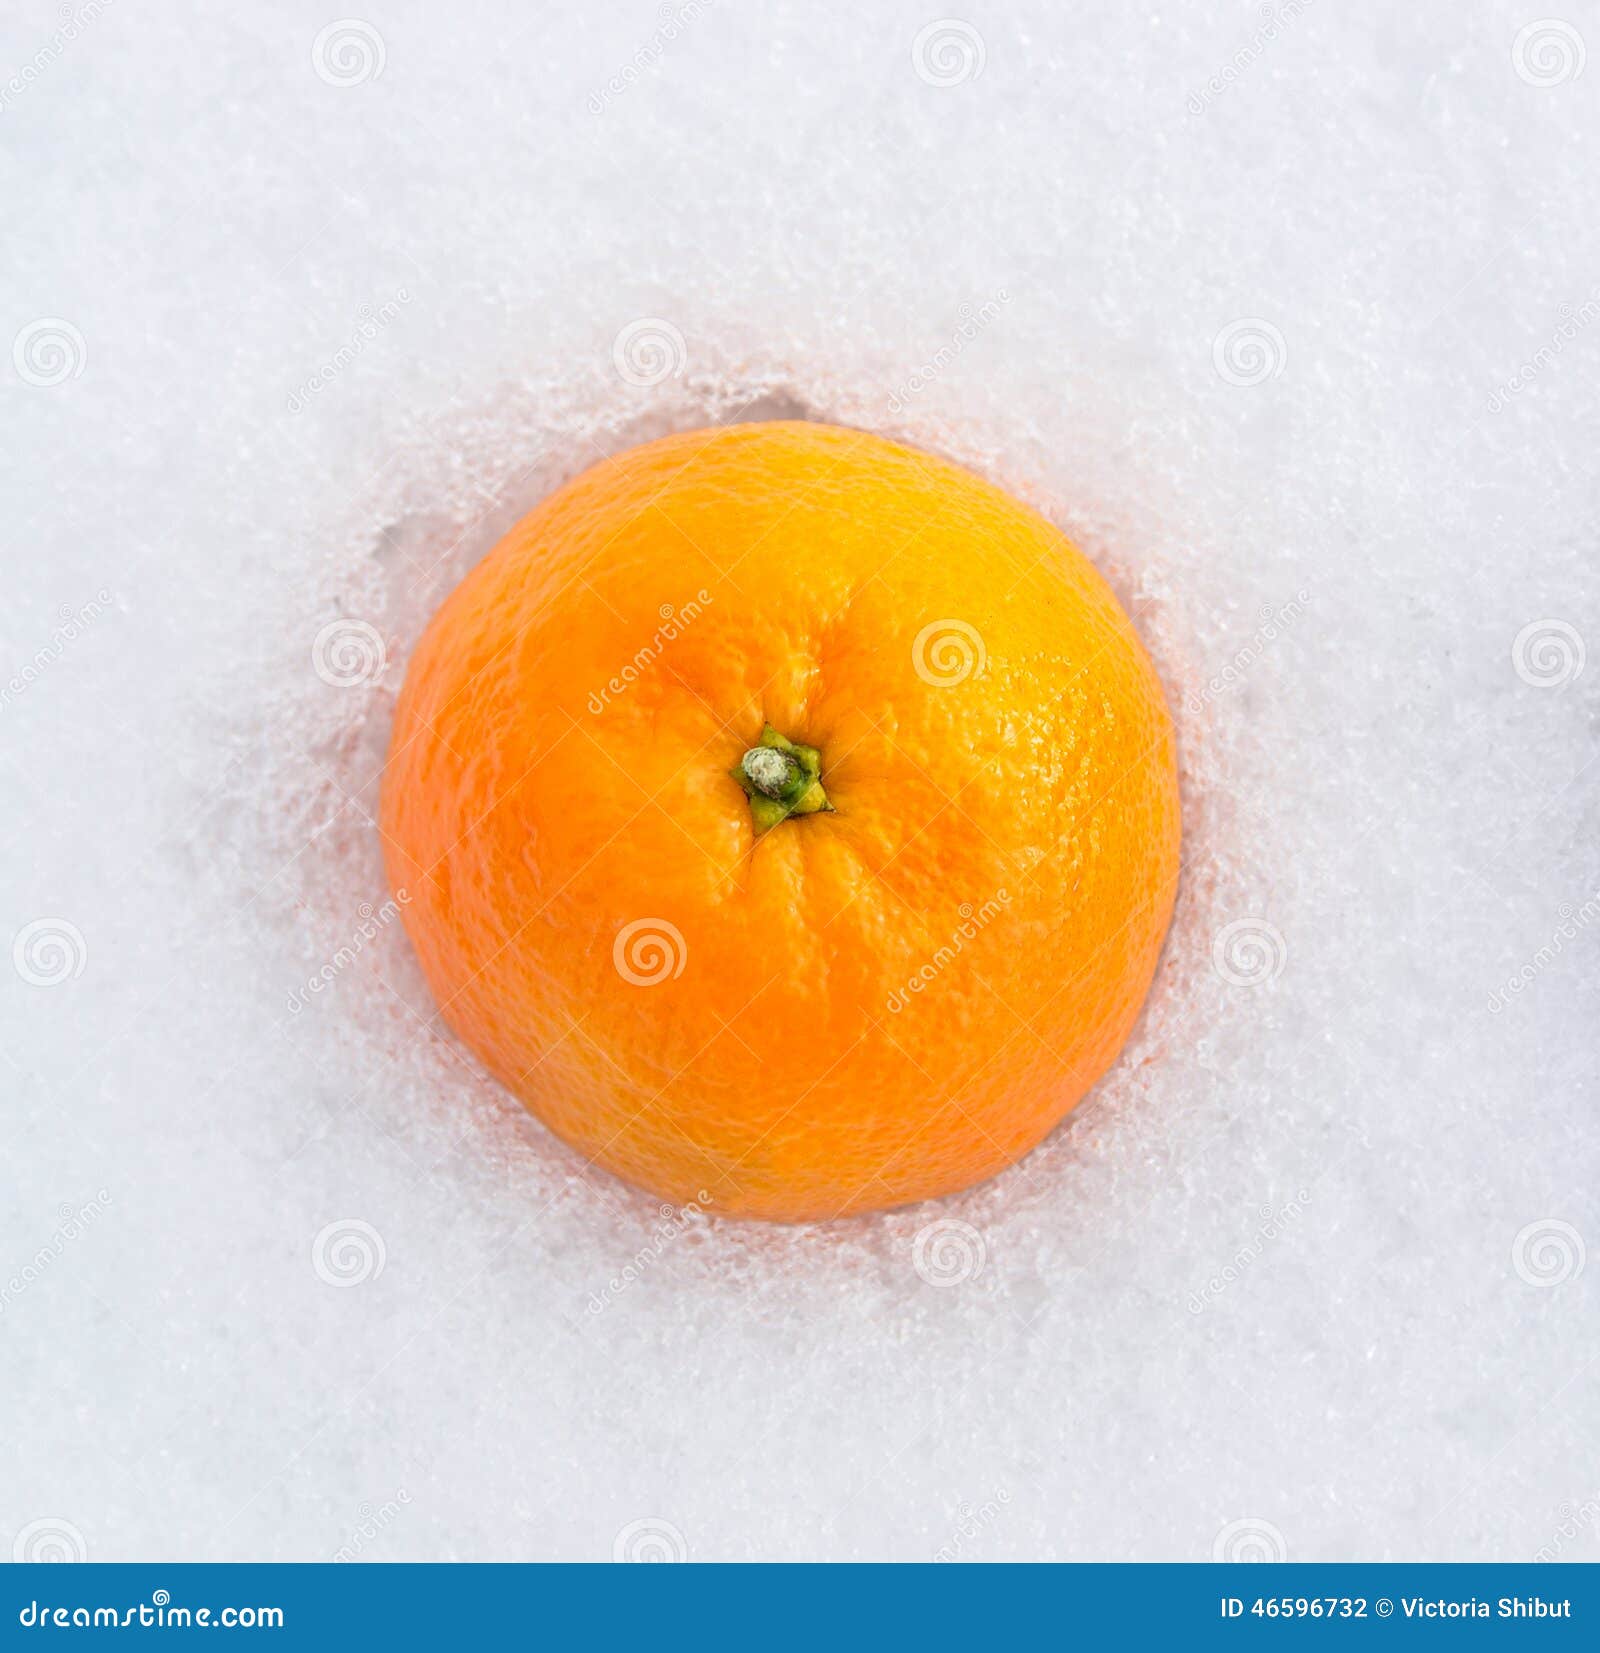 В пакете лежала мандарина. Апельсин на снегу вид сверху.